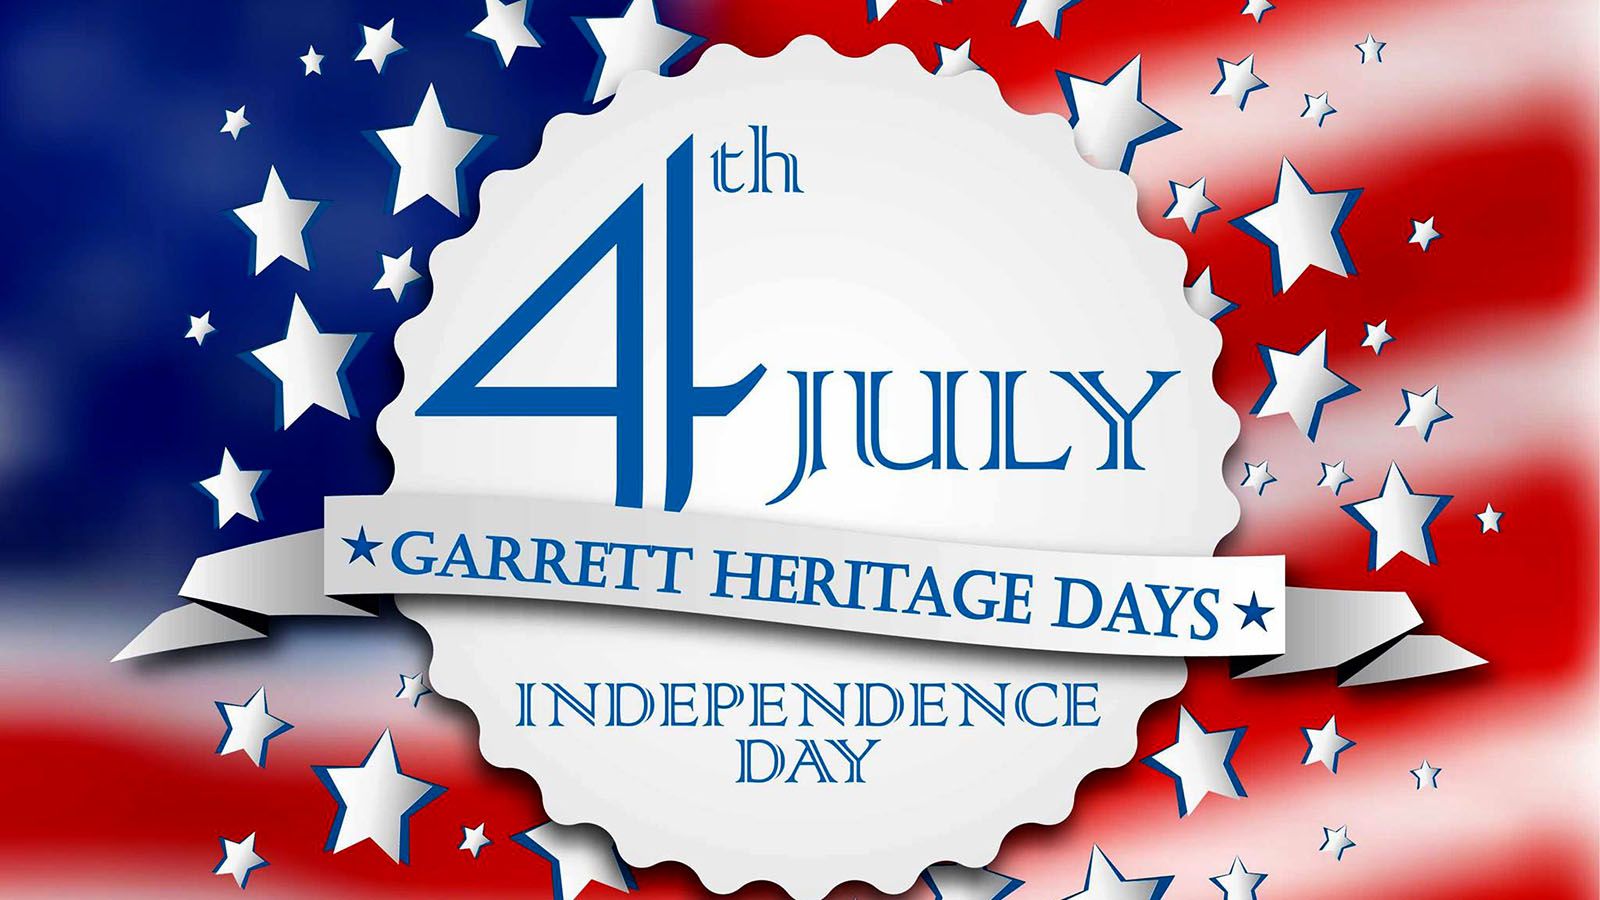 Garrett Heritage Days will be held July 3-4.